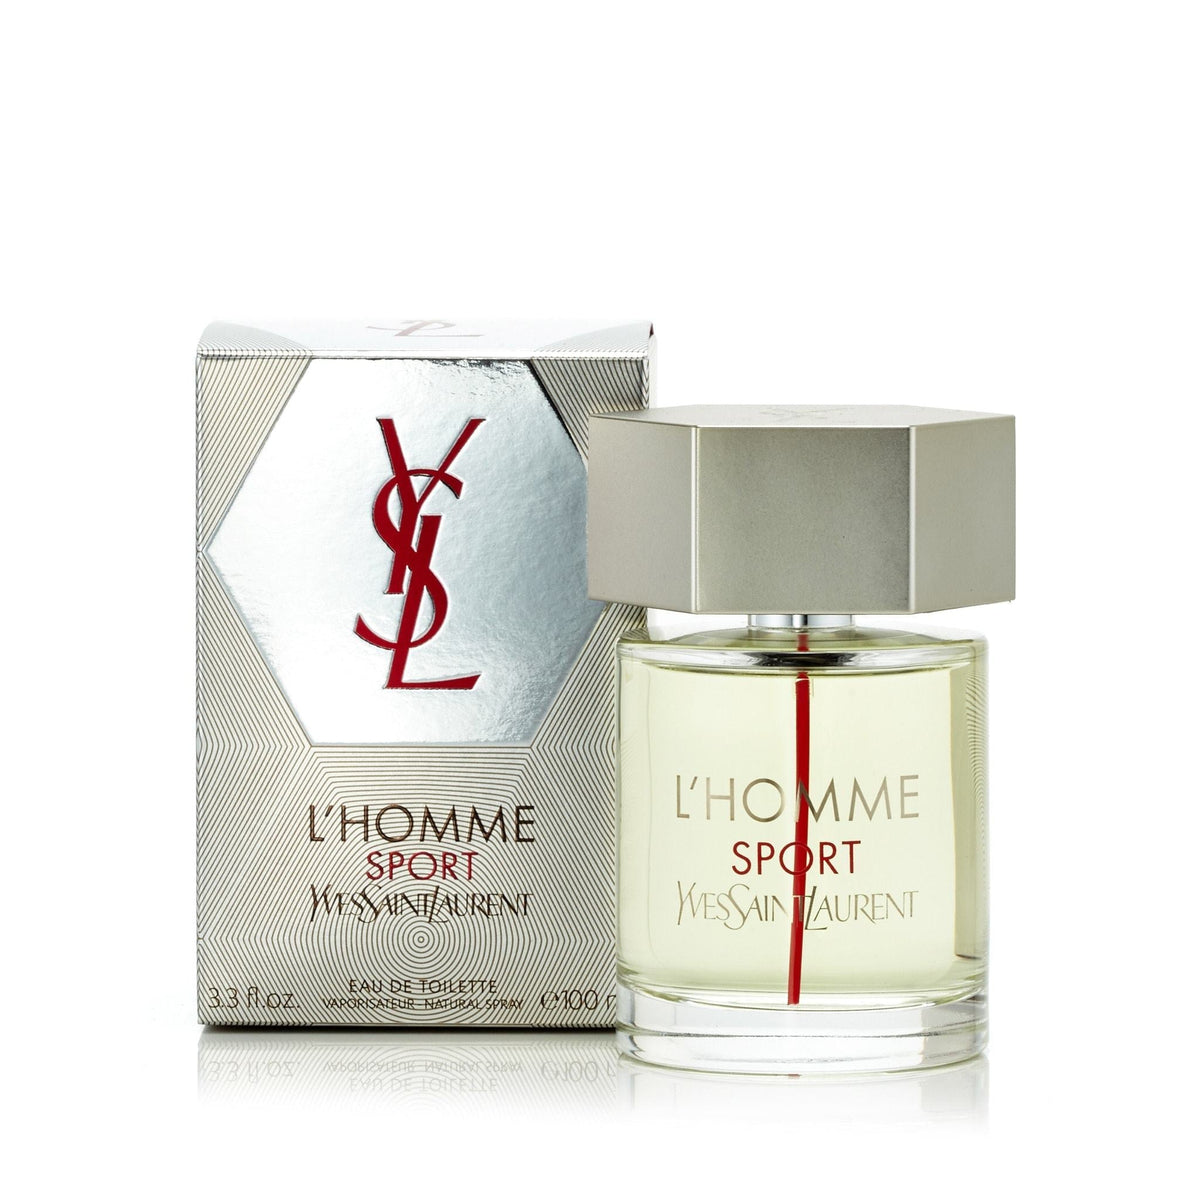 L'Homme Sport Eau de Toilette Spray for Men by Yves Saint Laurent 3.3 oz.